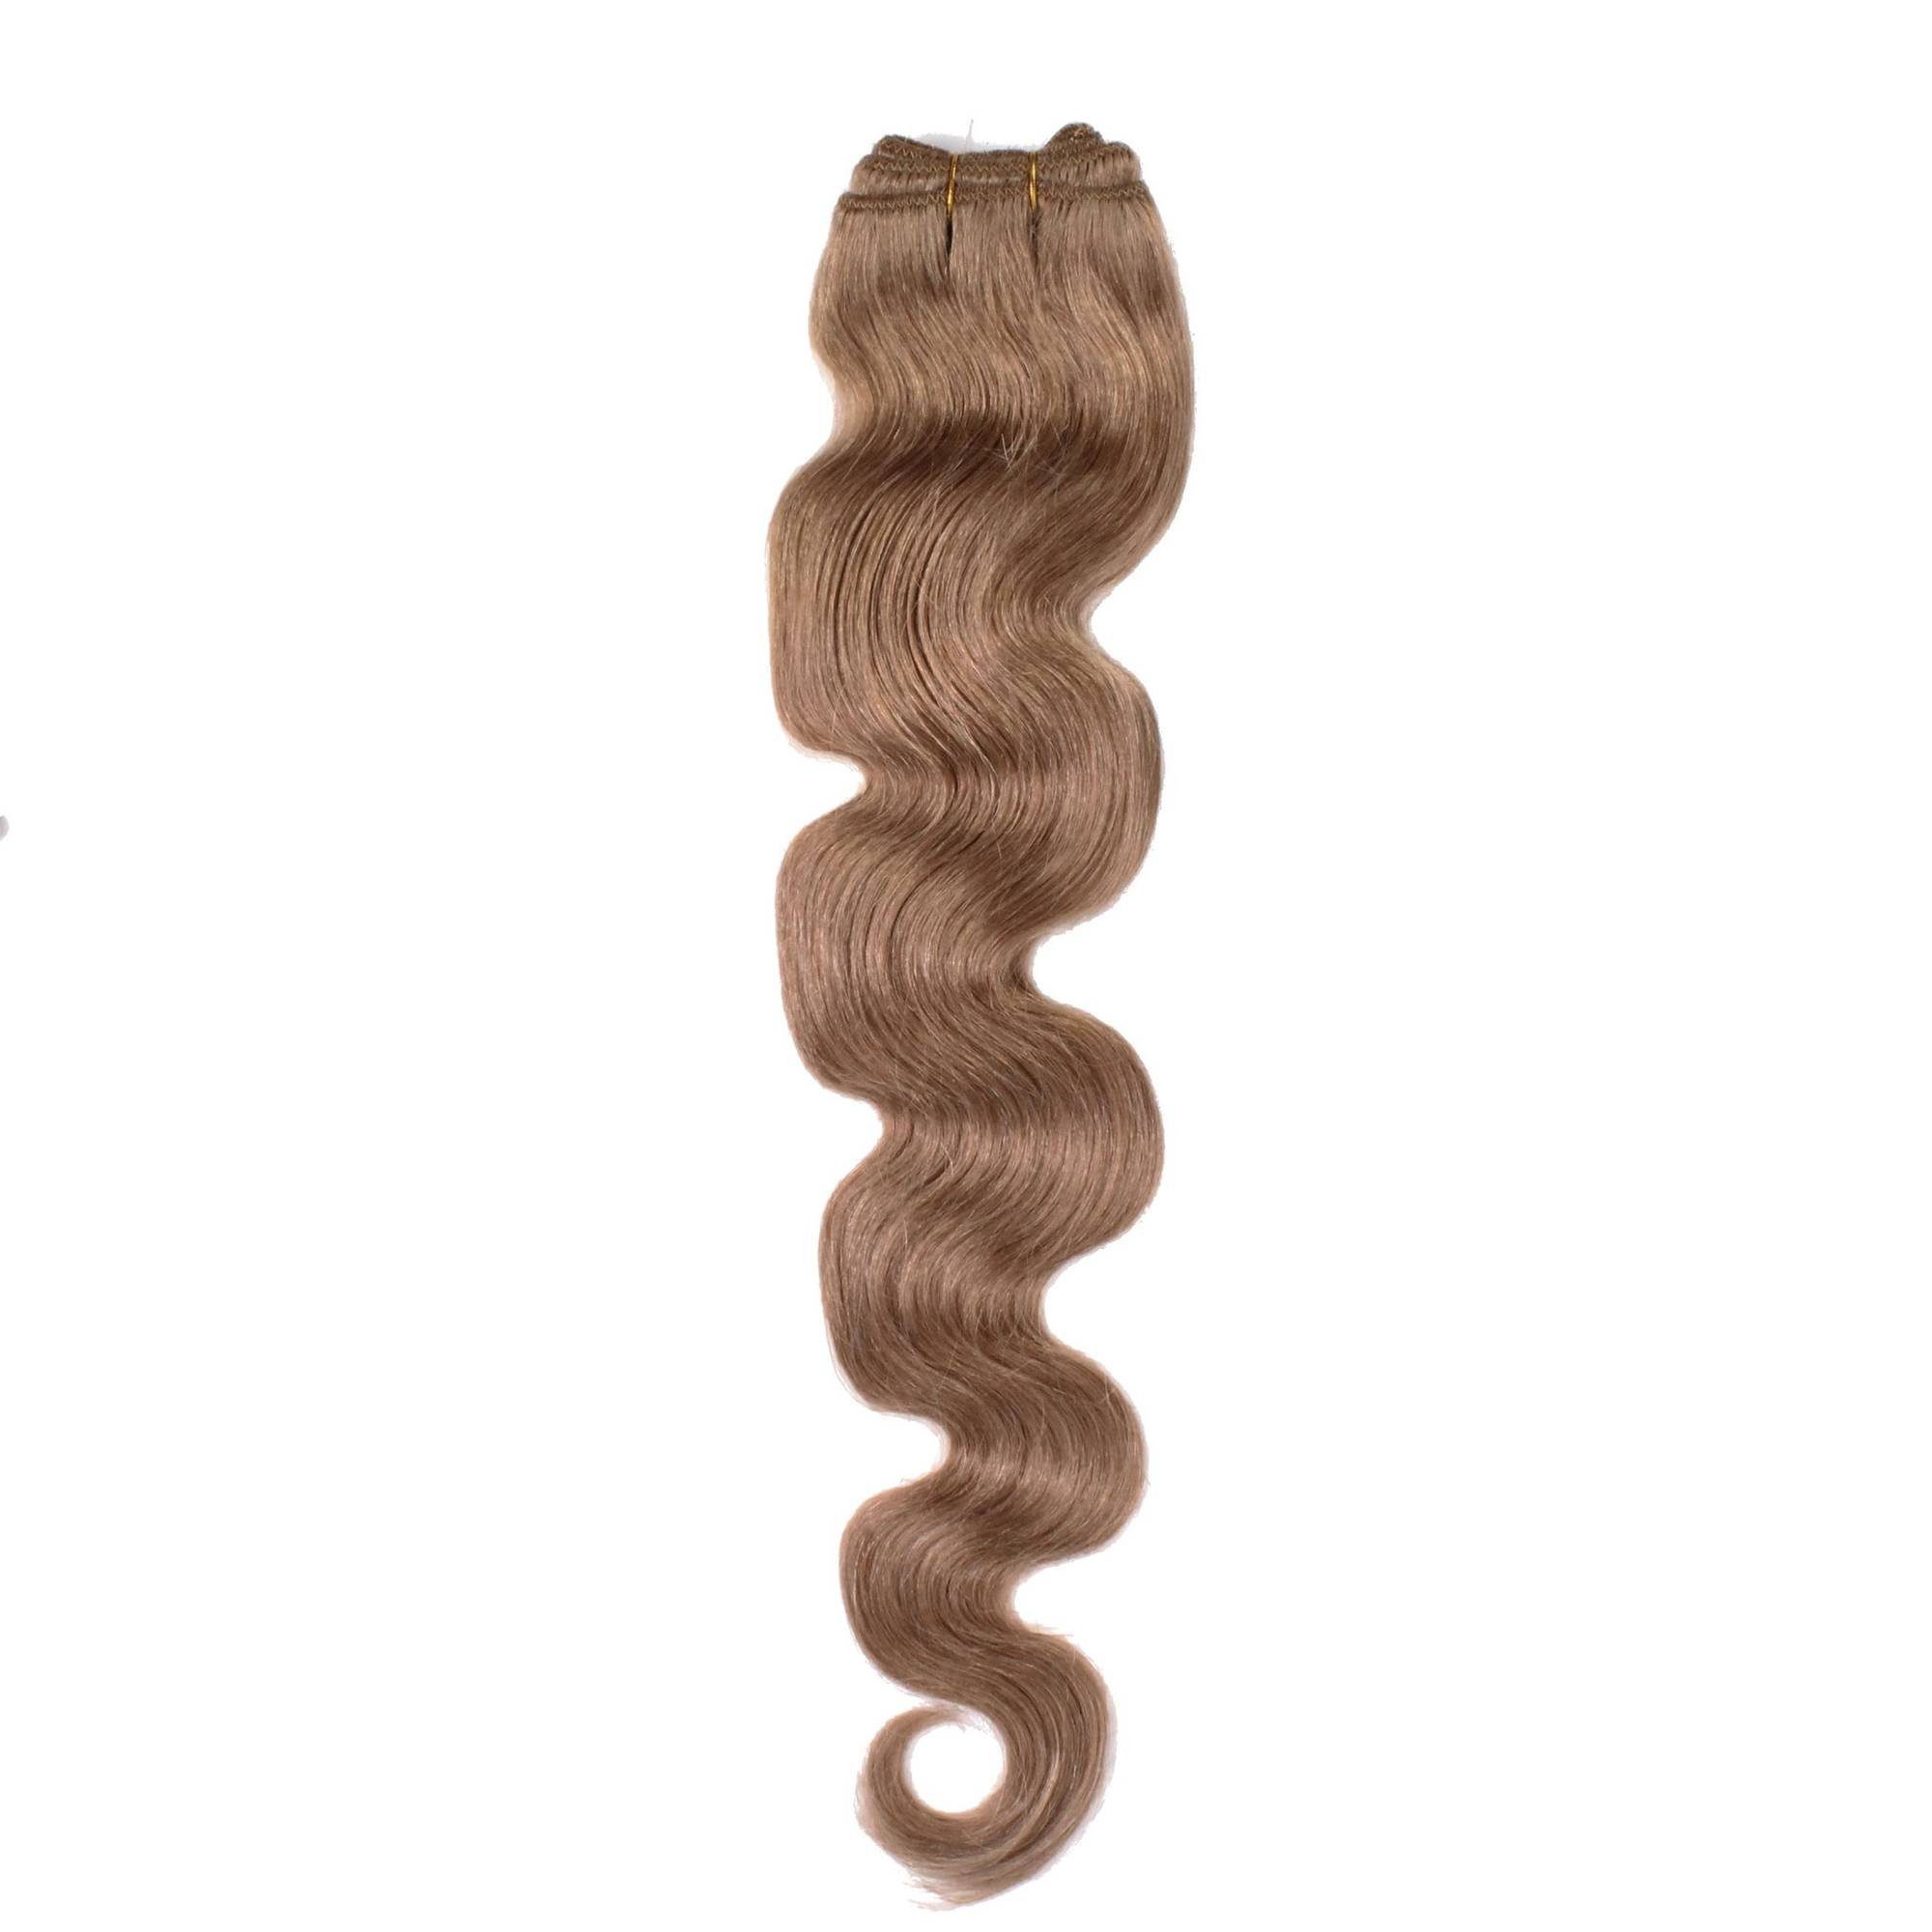 supergünstige Marken hair2heart Echthaar-Extension #10/31 40cm Gewellte Hell-Lichtblond Gold-Asch Echthaartresse